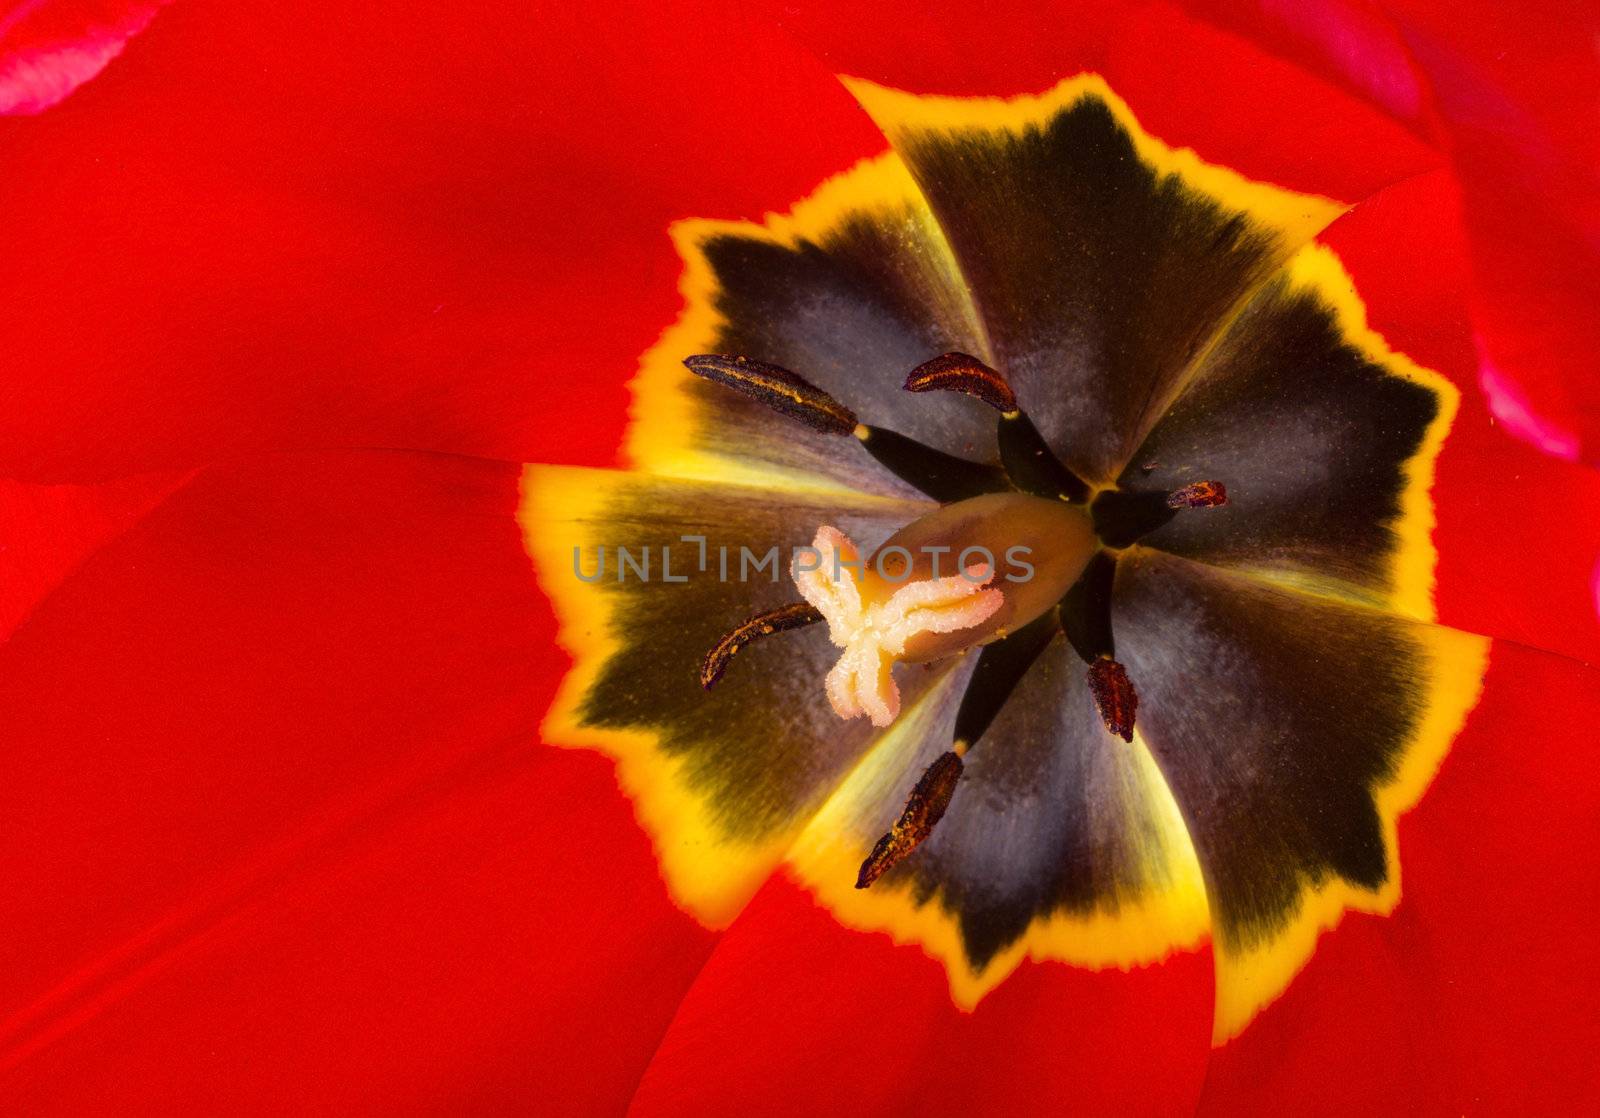 macro shot of red tulip